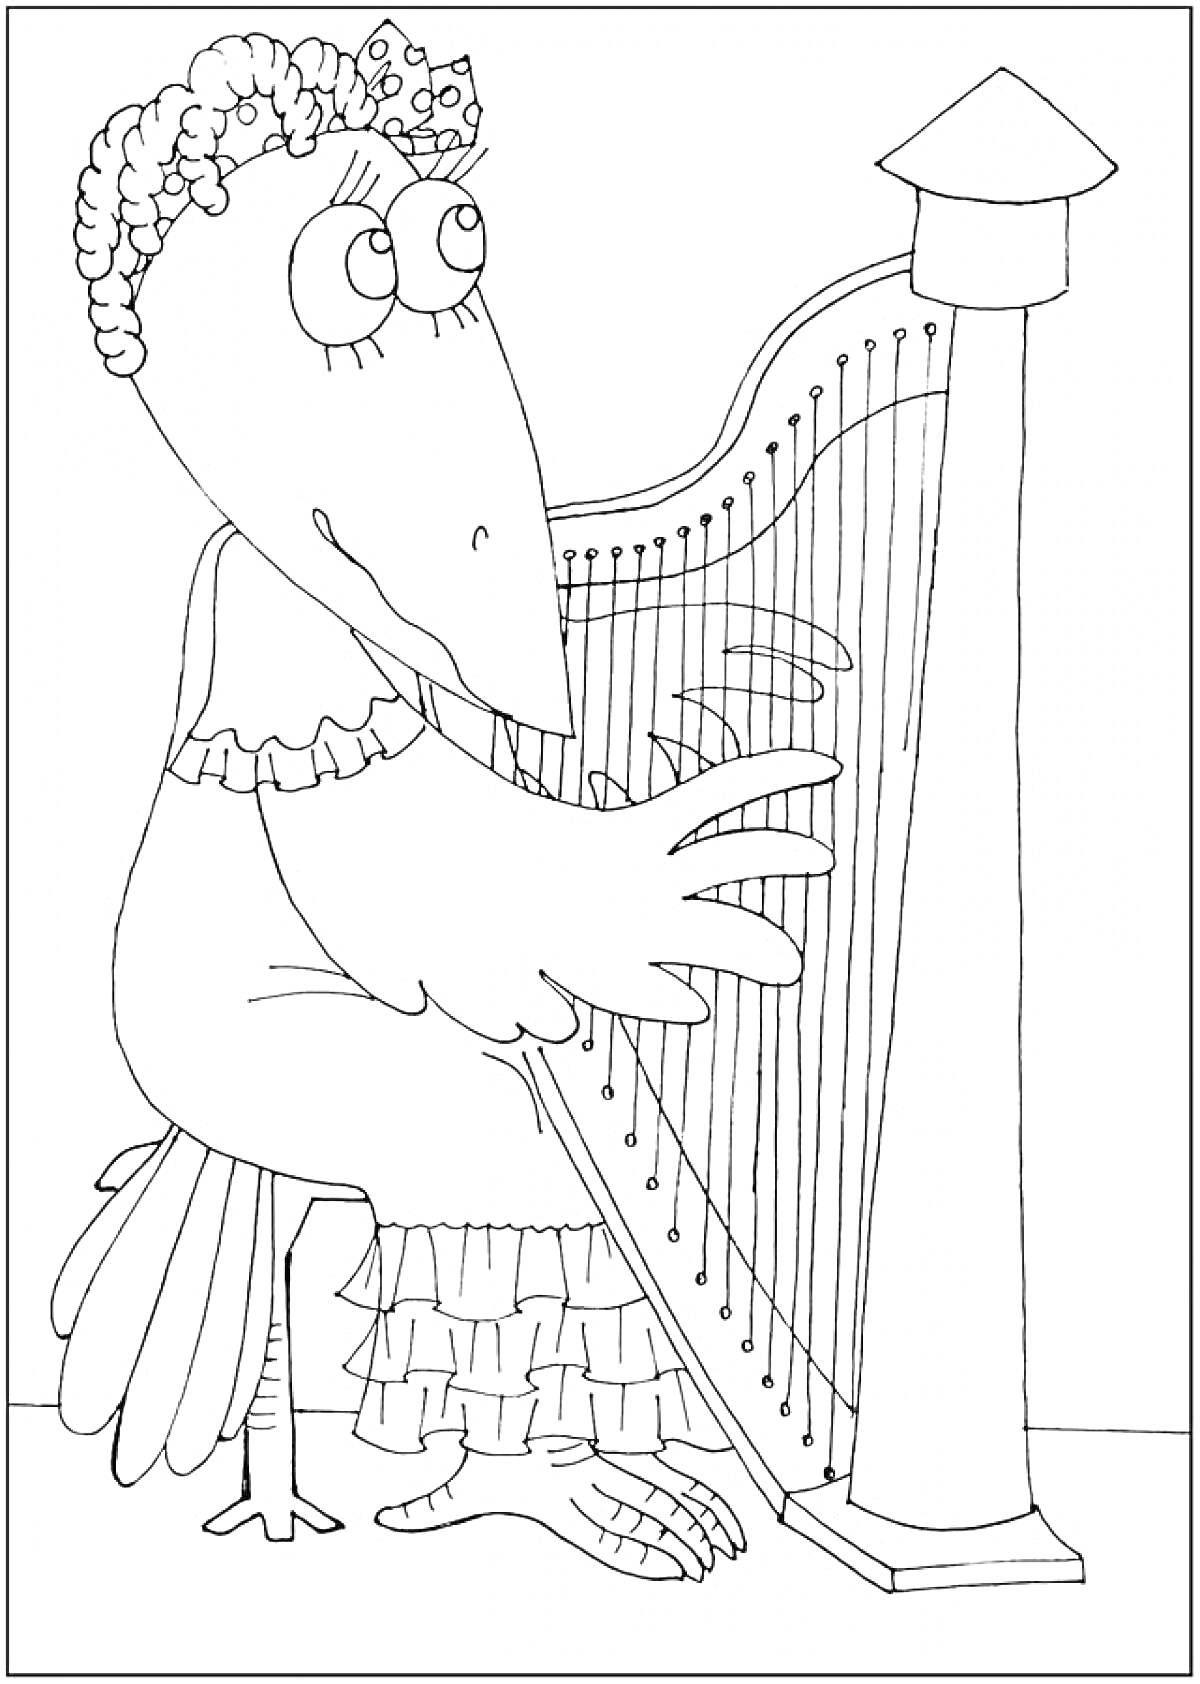 Ворона, играющая на арфе, в платье и с короной